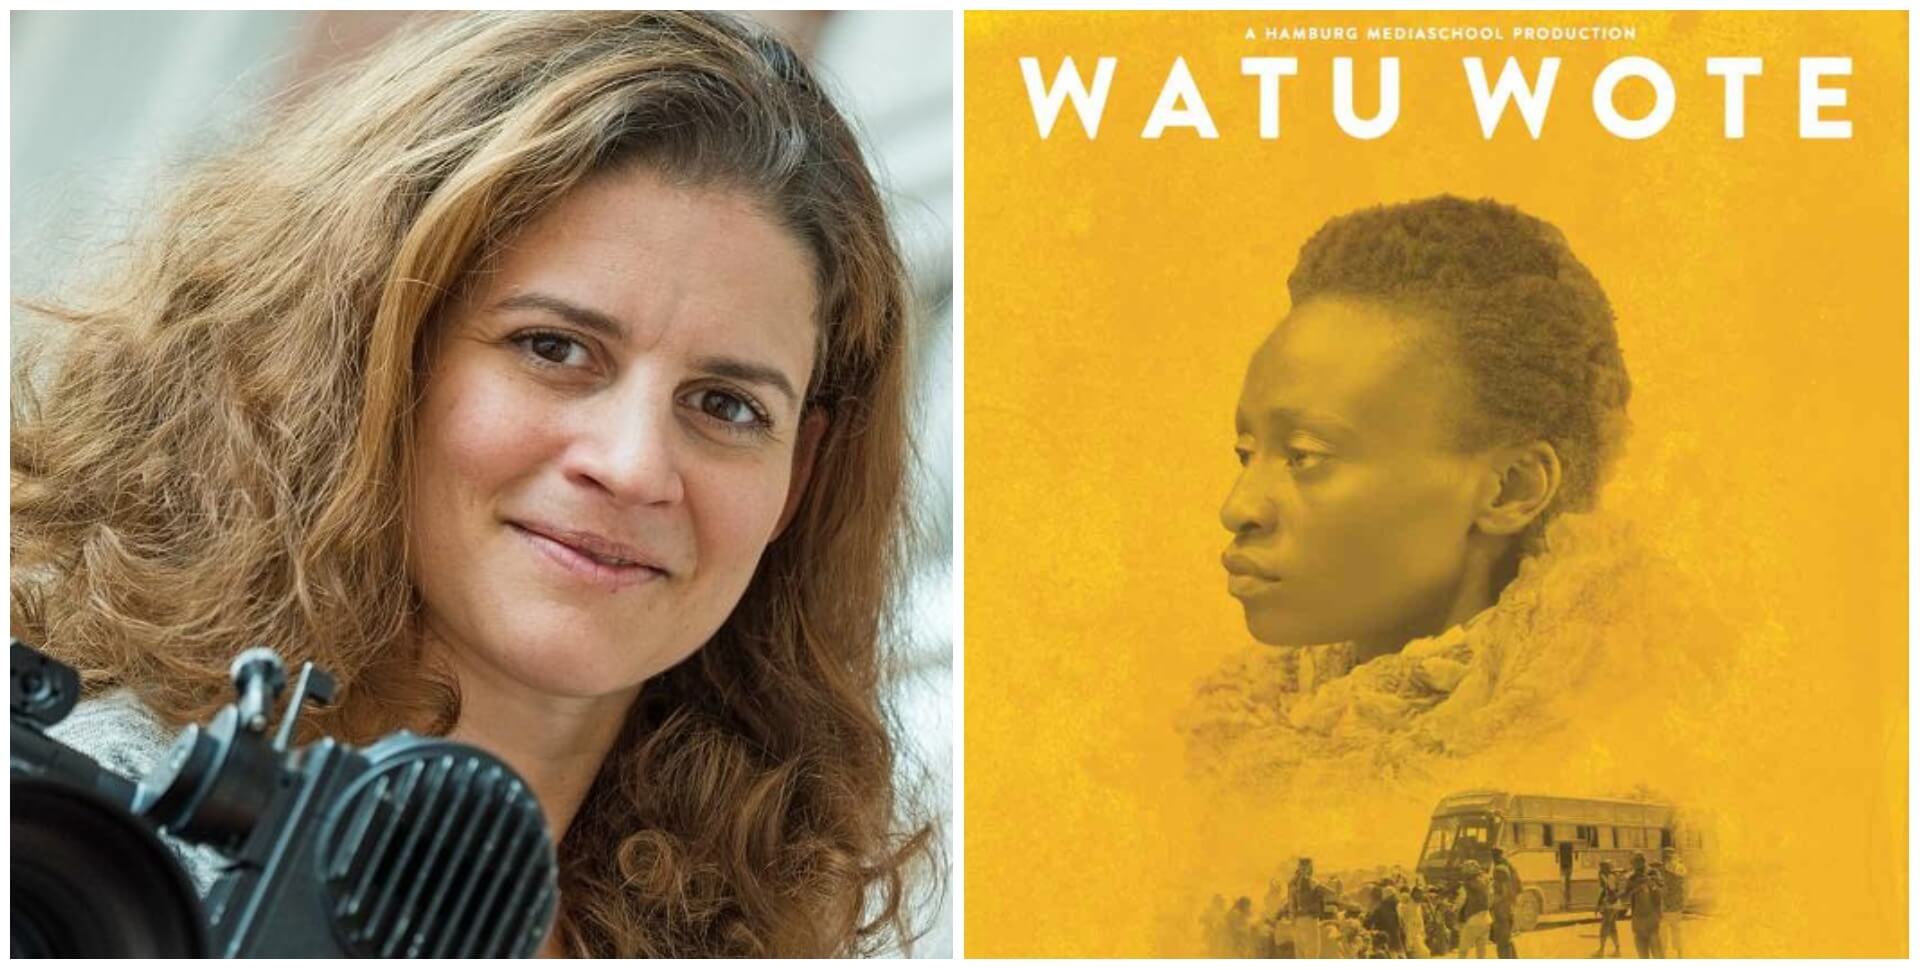 Watu Wote - Interview with Director Katja Benrath